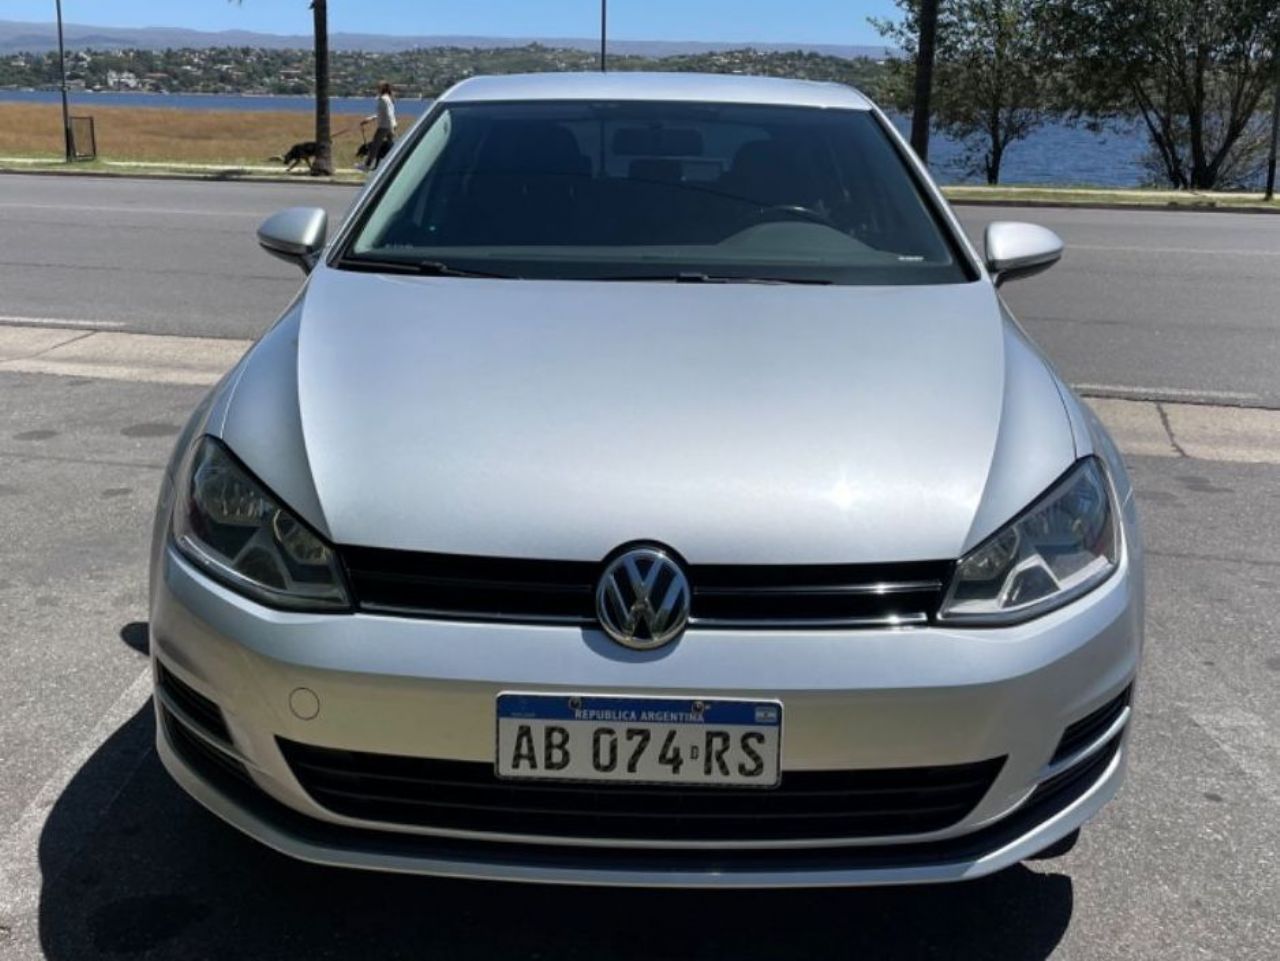 Volkswagen Golf Usado en Córdoba, deRuedas